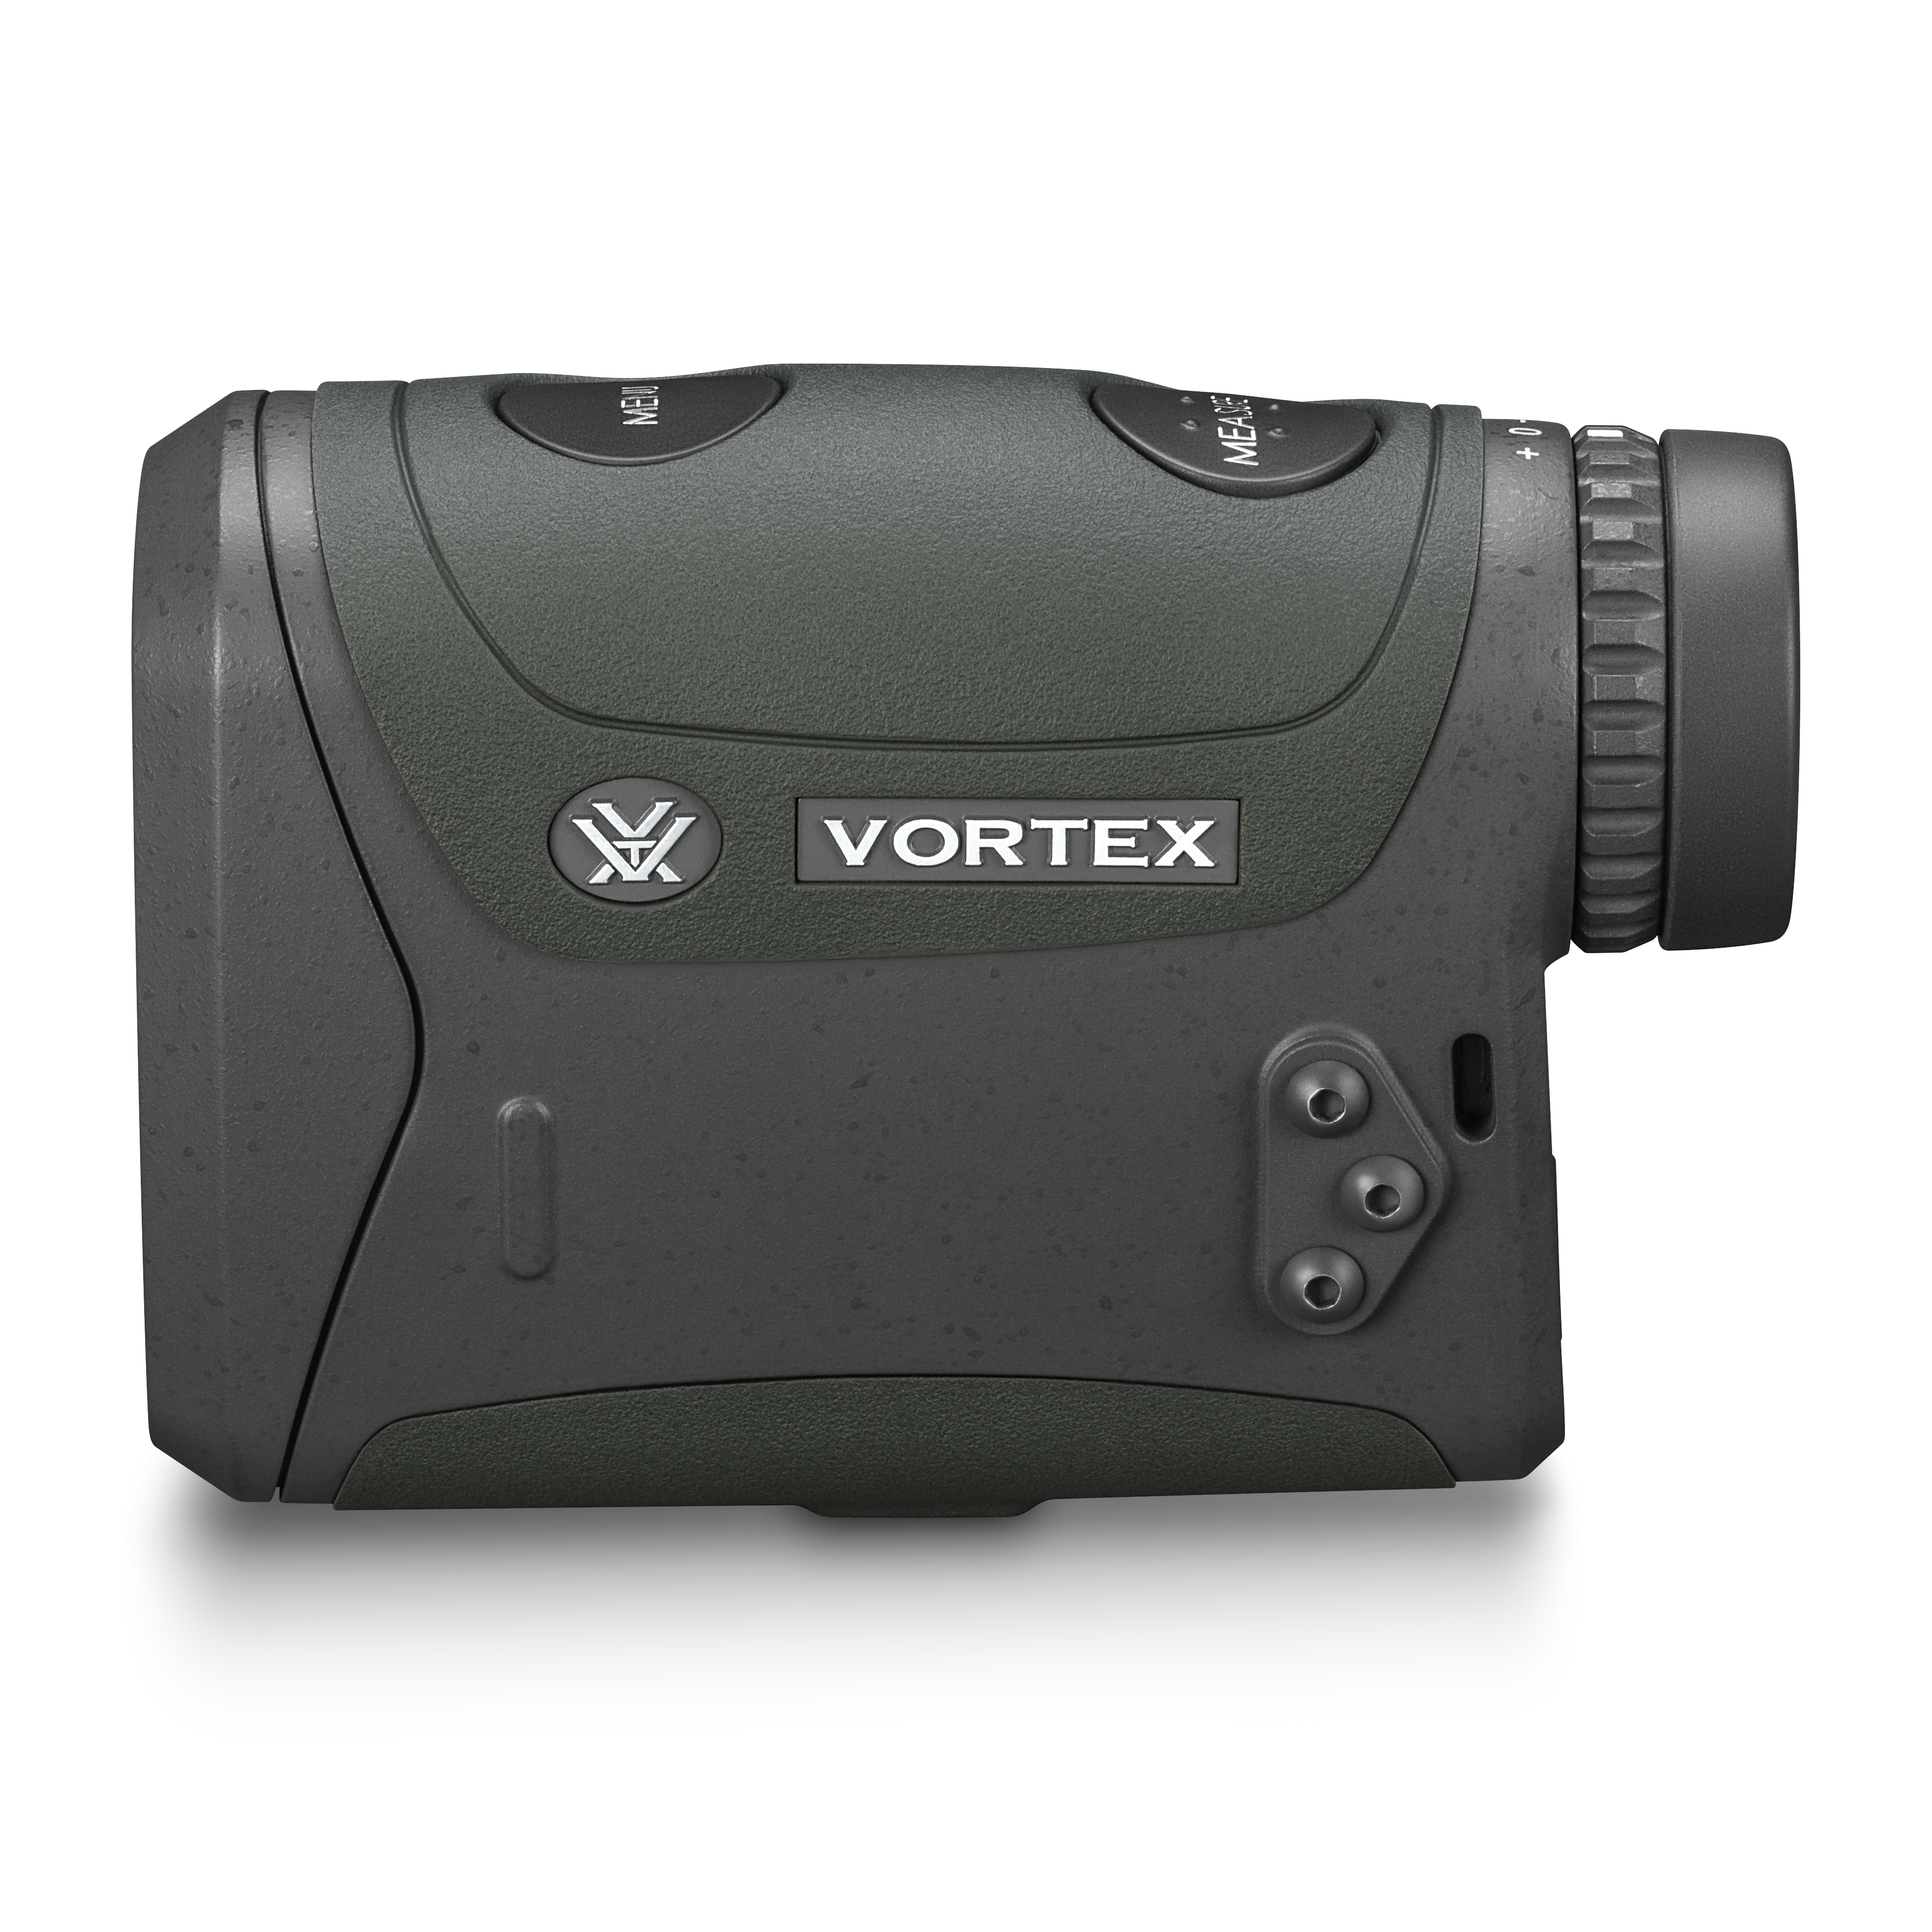 VORTEX Rangefinder Razor HD 4000